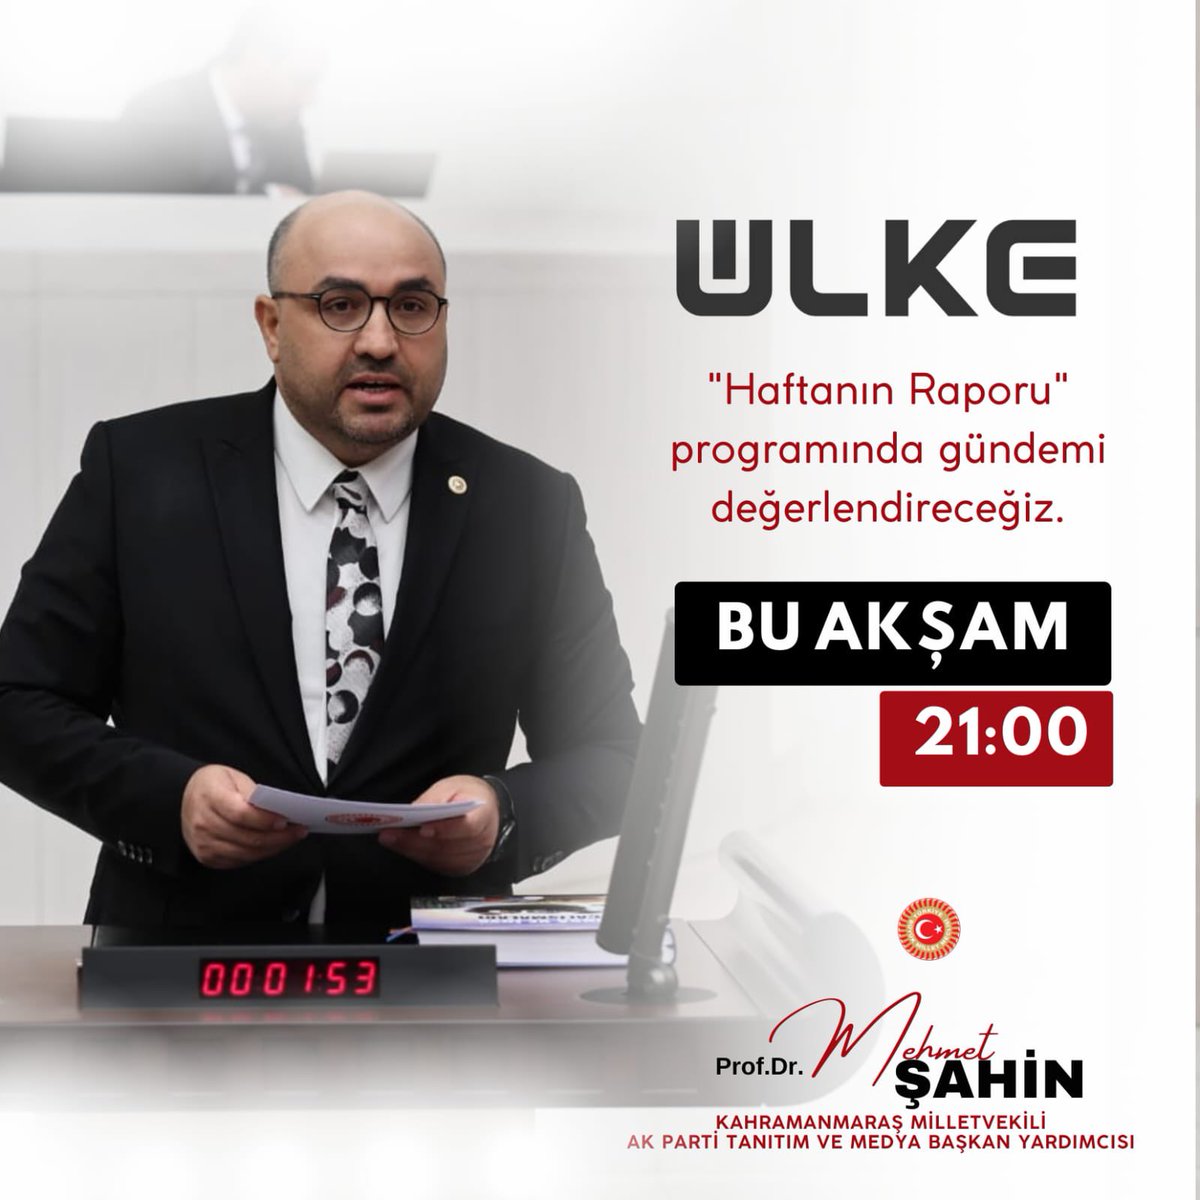 Milletvekilimiz Mehmet Şahin, bugün saat 22:00’da Ülke Tv’nin canlı yayın konuğu olacak.